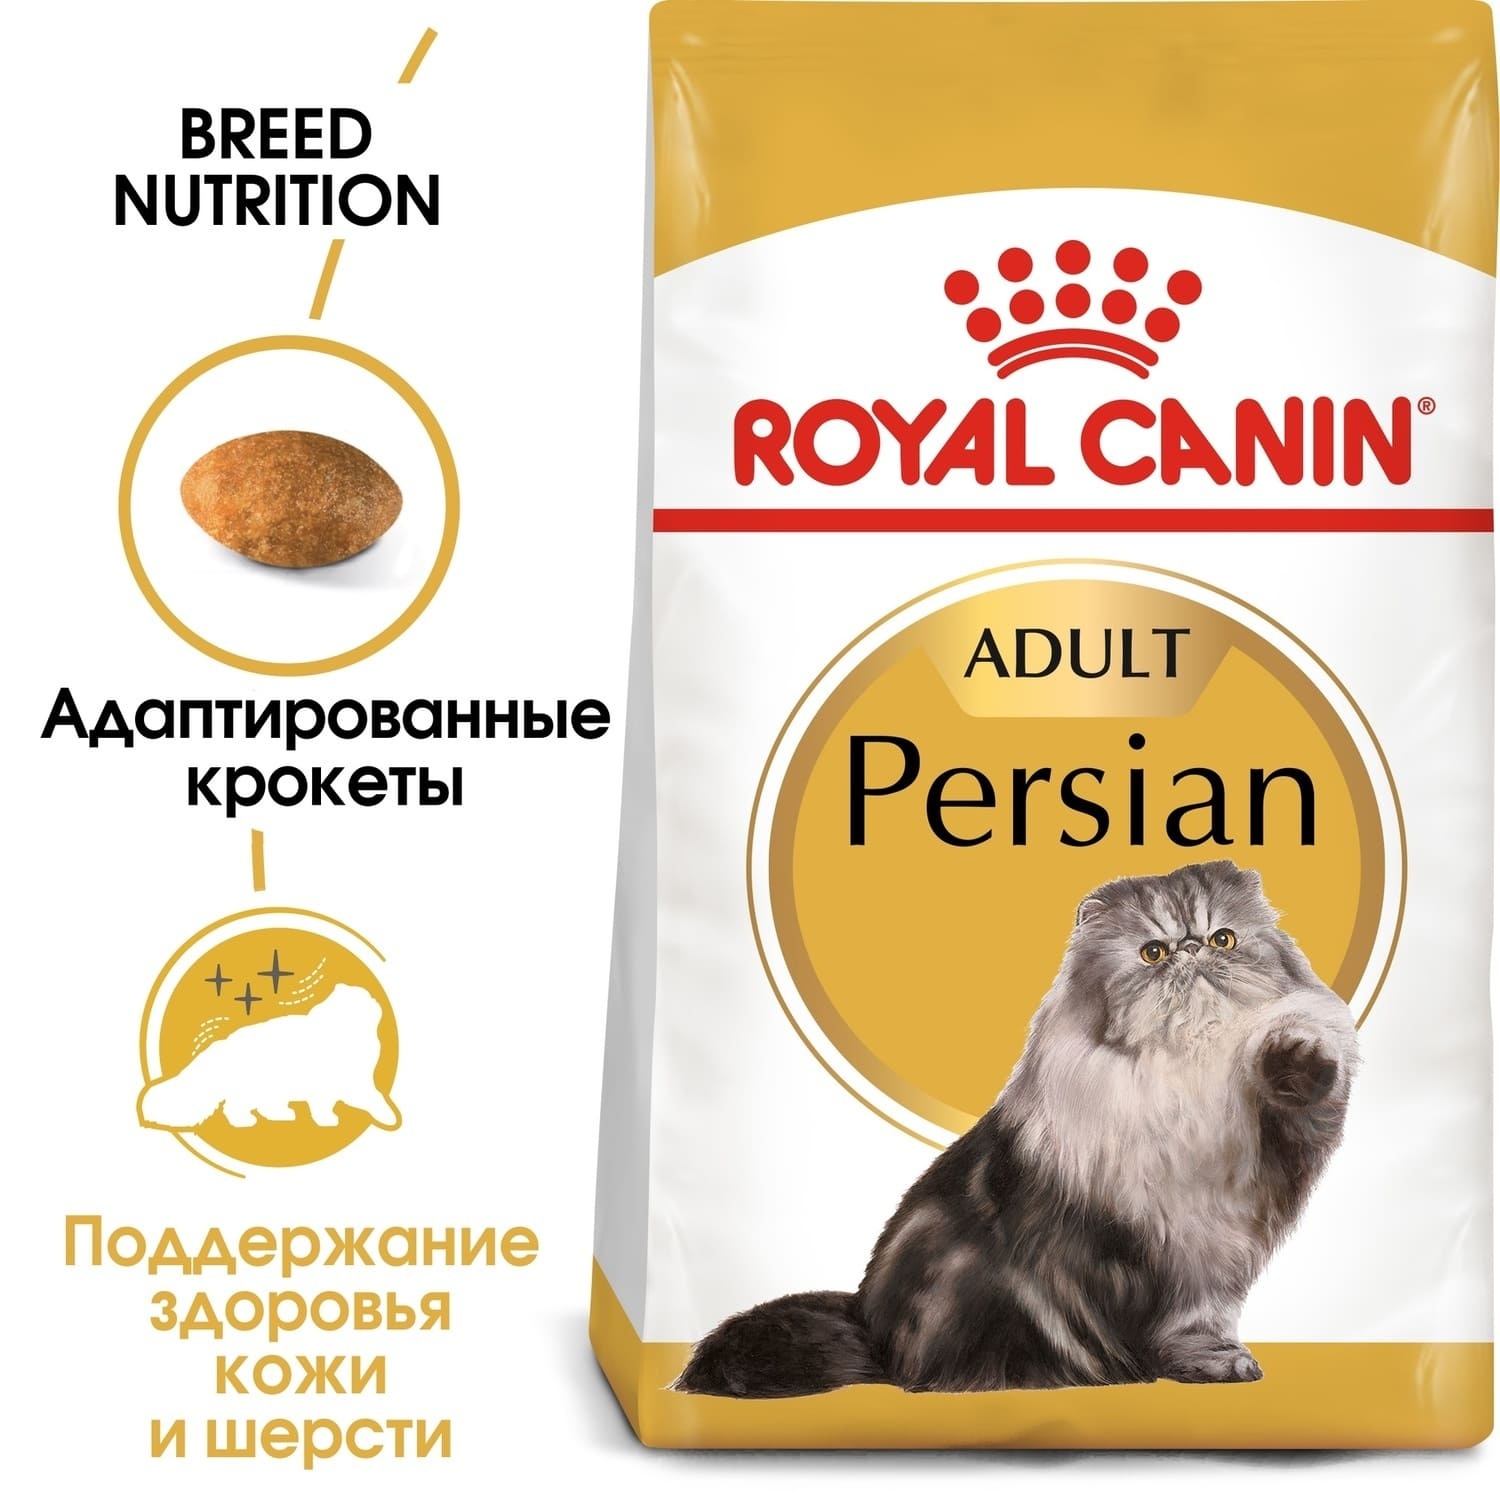 Для персидских кошек 1-10 лет (10 кг) Royal Canin (сухие корма) Для персидских кошек 1-10 лет (10 кг) - фото 2